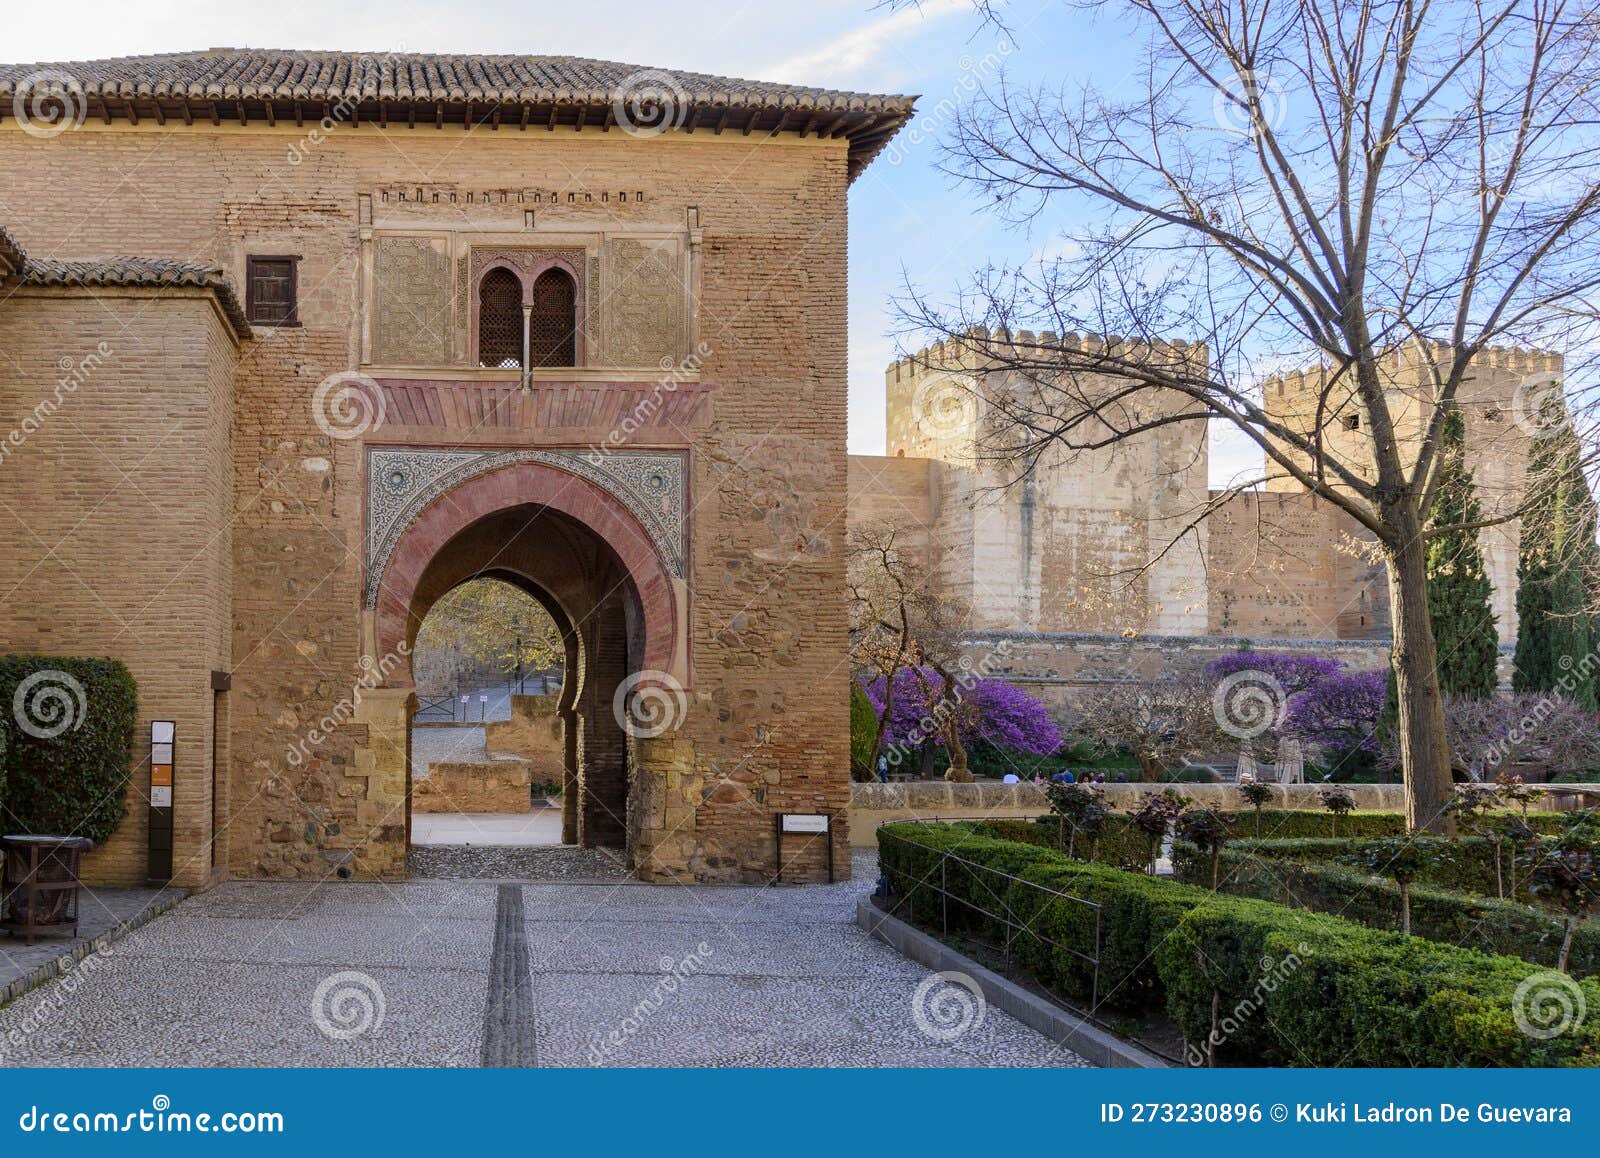 puerta del vino in the alhambra in granada, spain